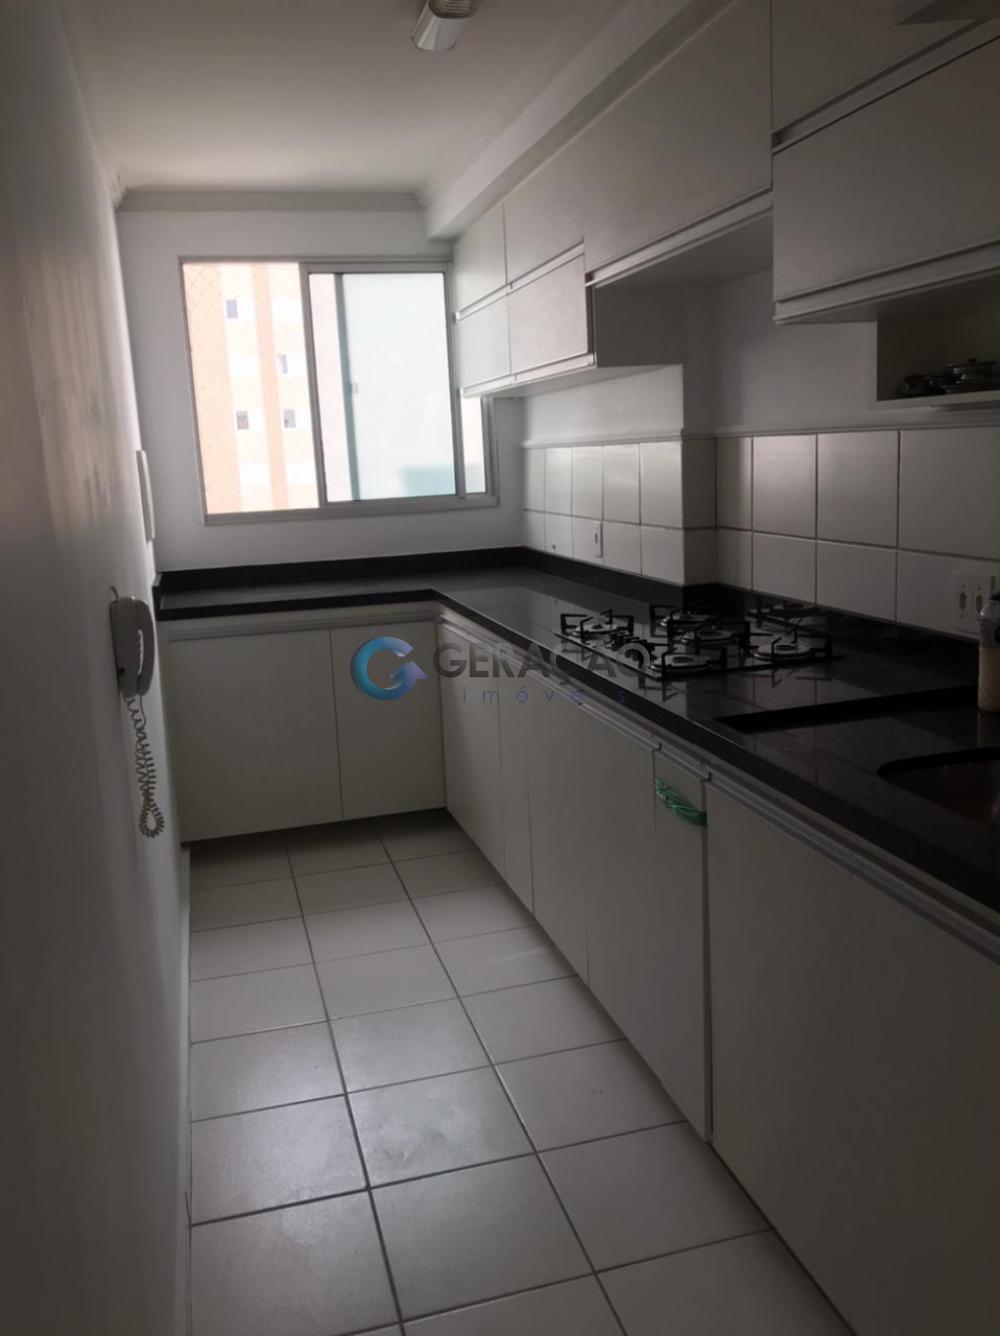 Comprar Apartamento / Cobertura em São José dos Campos R$ 385.000,00 - Foto 2